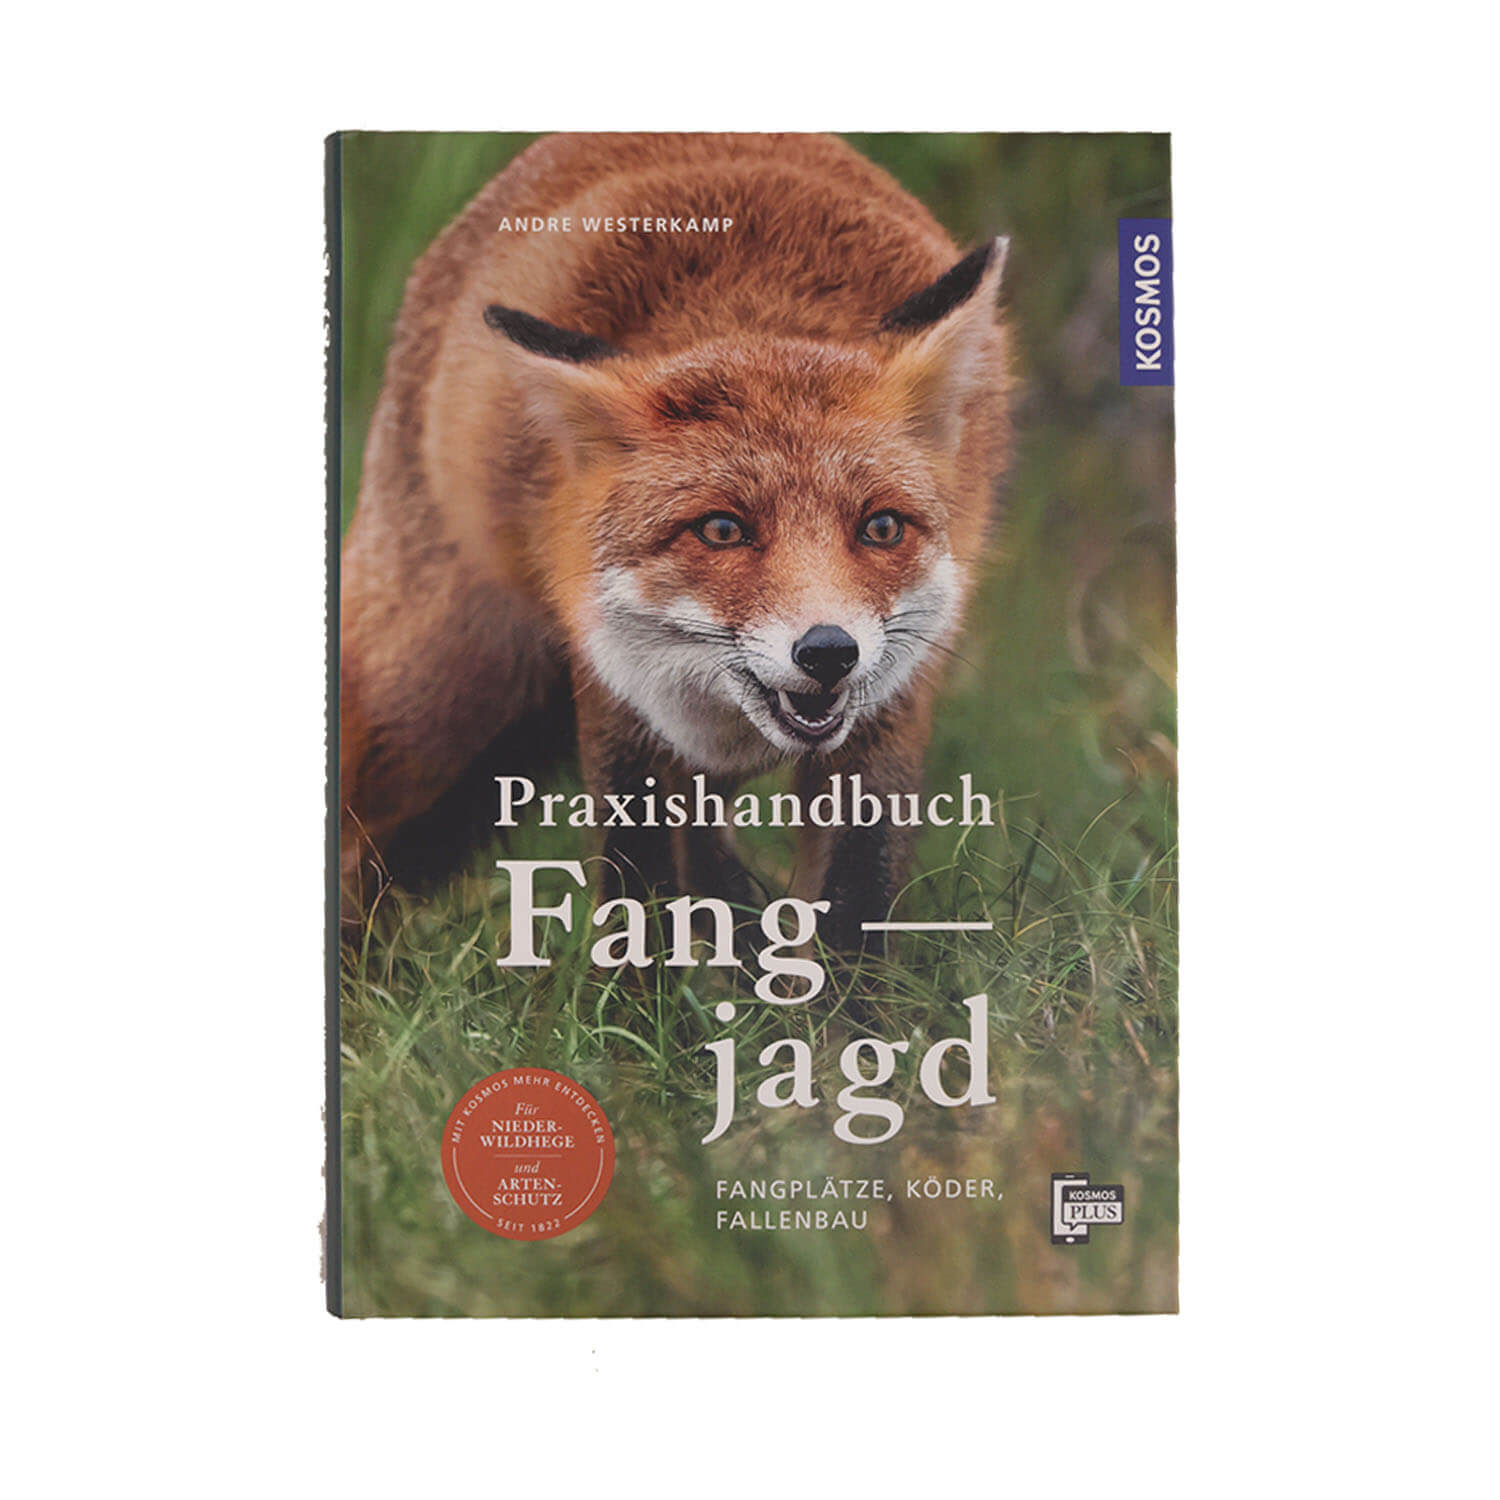 Praxishandbuch Fangjagd - Buch - Andre Westerkam - Jagdausrüstung